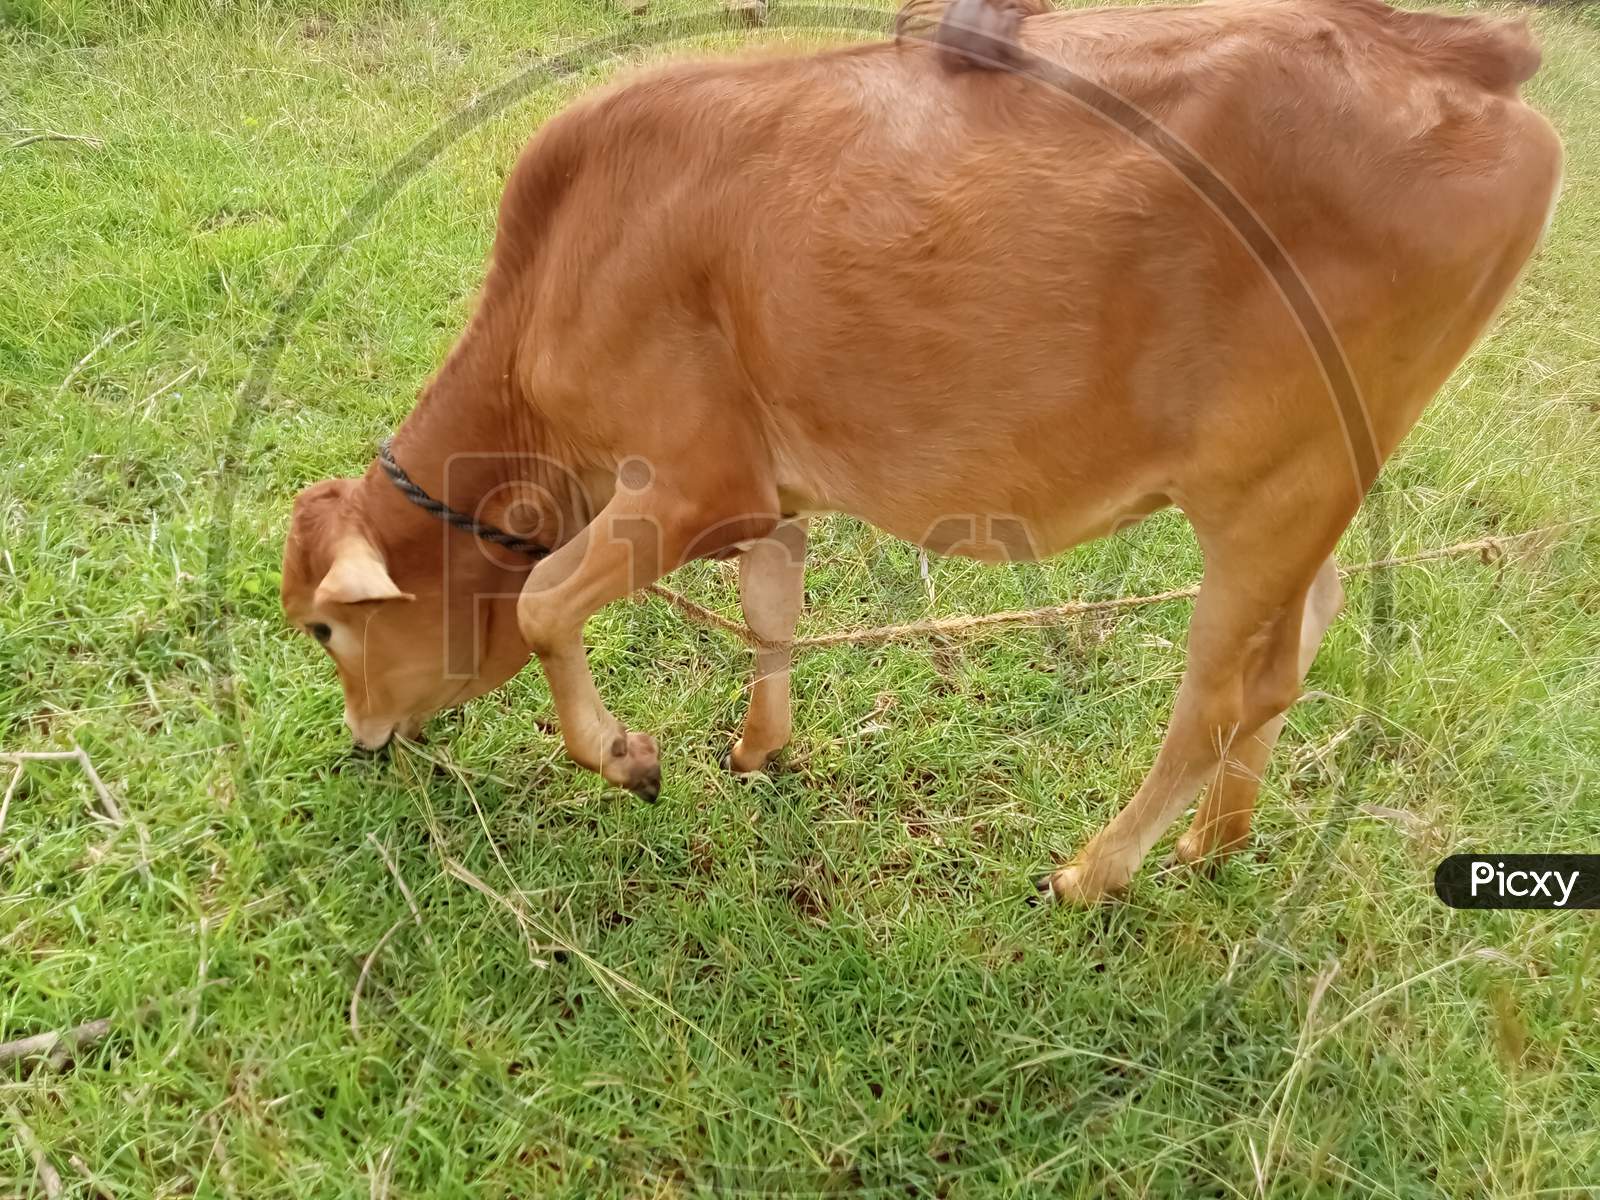 The calf eats grass